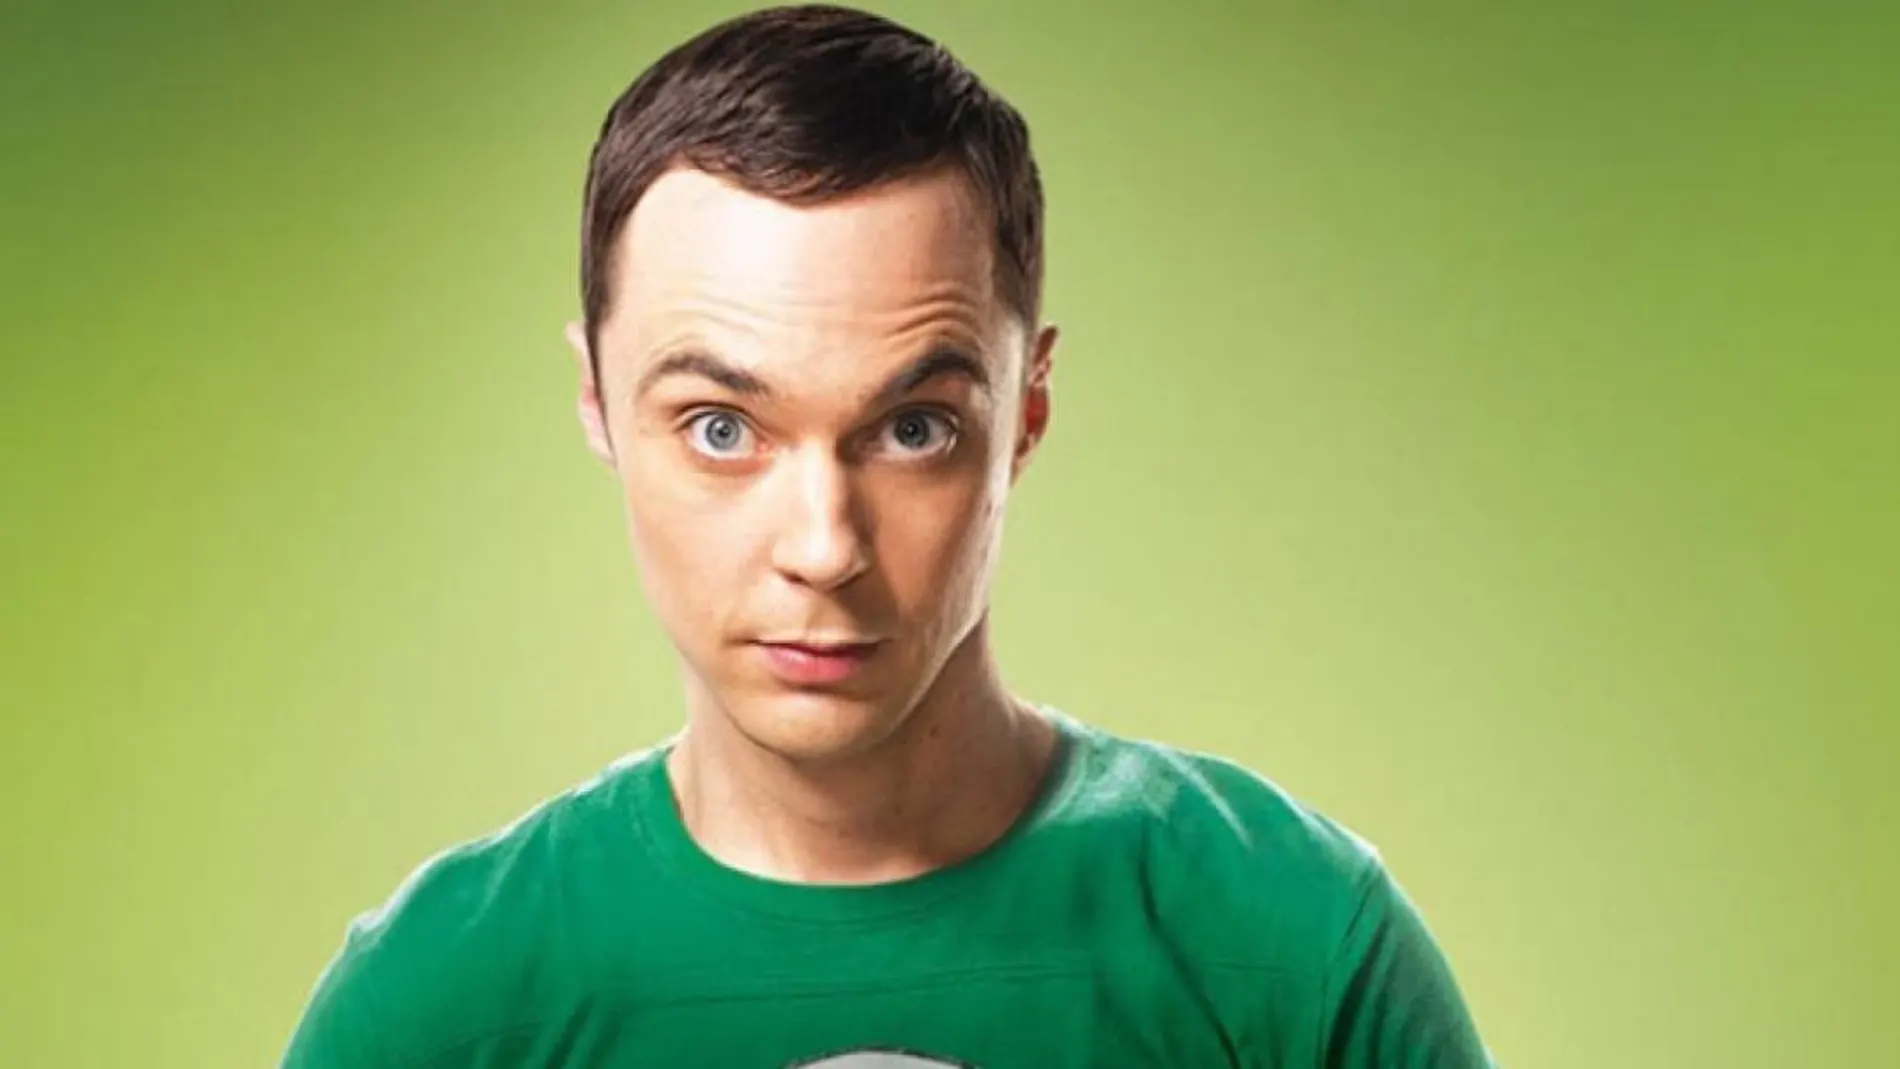 Sheldon Cooper es un personaje de la serie Big Bang Theory que padece Asperger